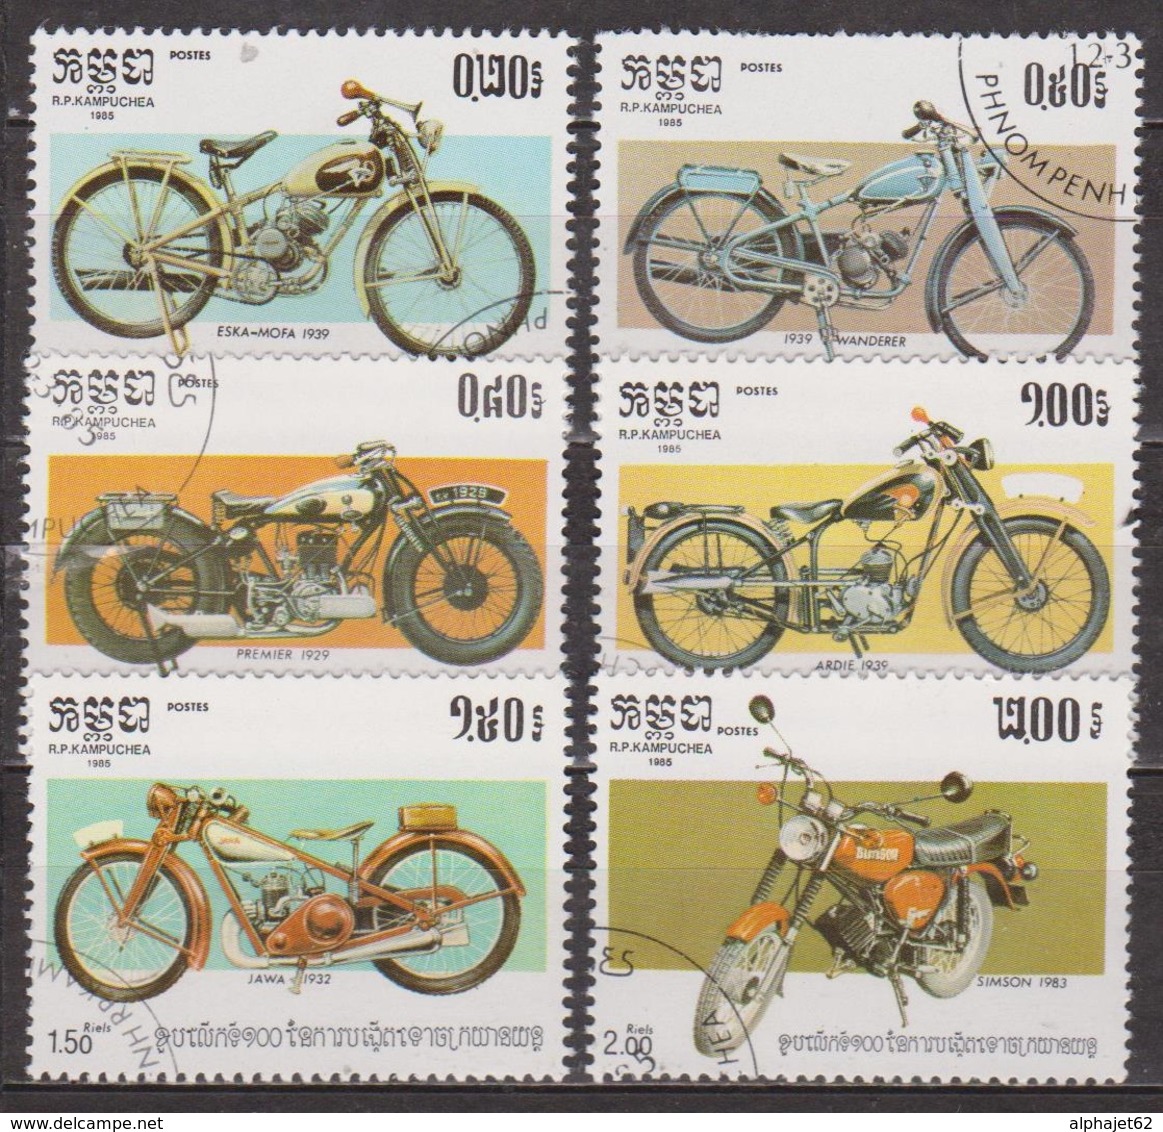 Transports - Centenaire De La Motocyclette - KAMPUCHEA - Wanderer, Premier, Ardie, Java, Simson - N° 529 à 534 - 1986 - Kampuchea